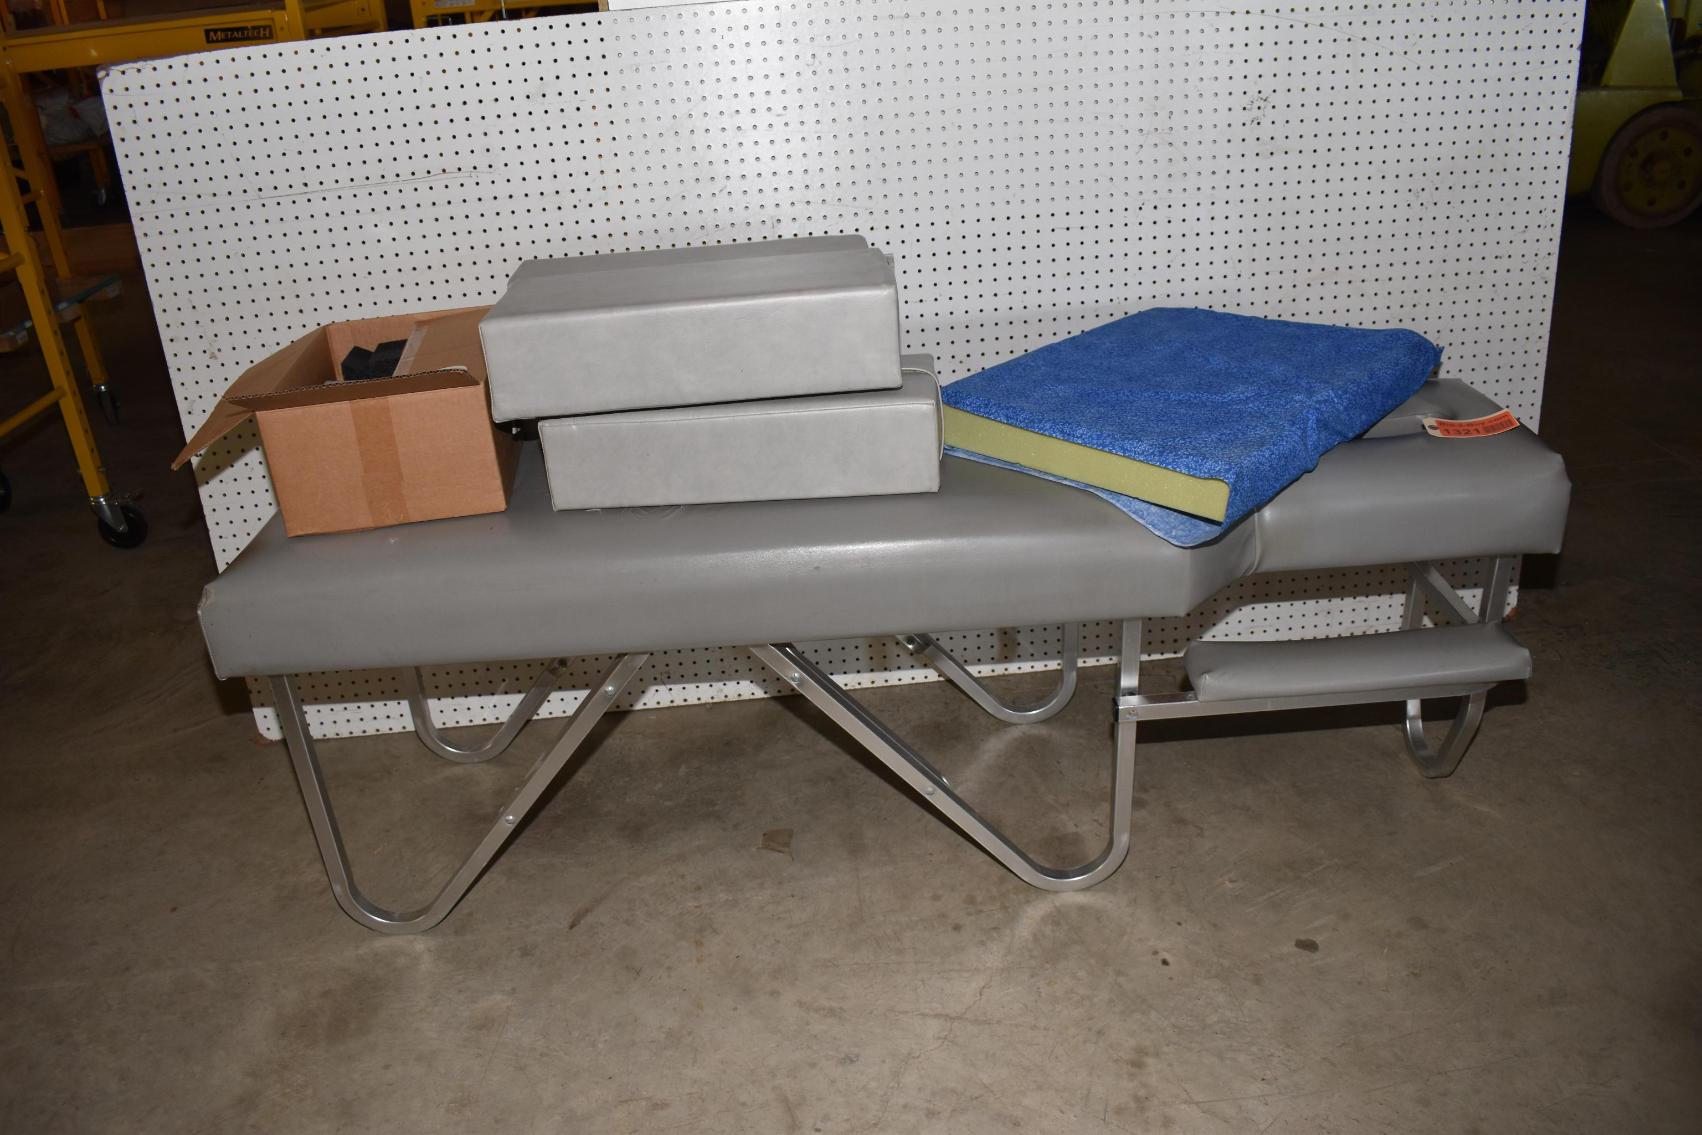 Chiropractic Office Equipment